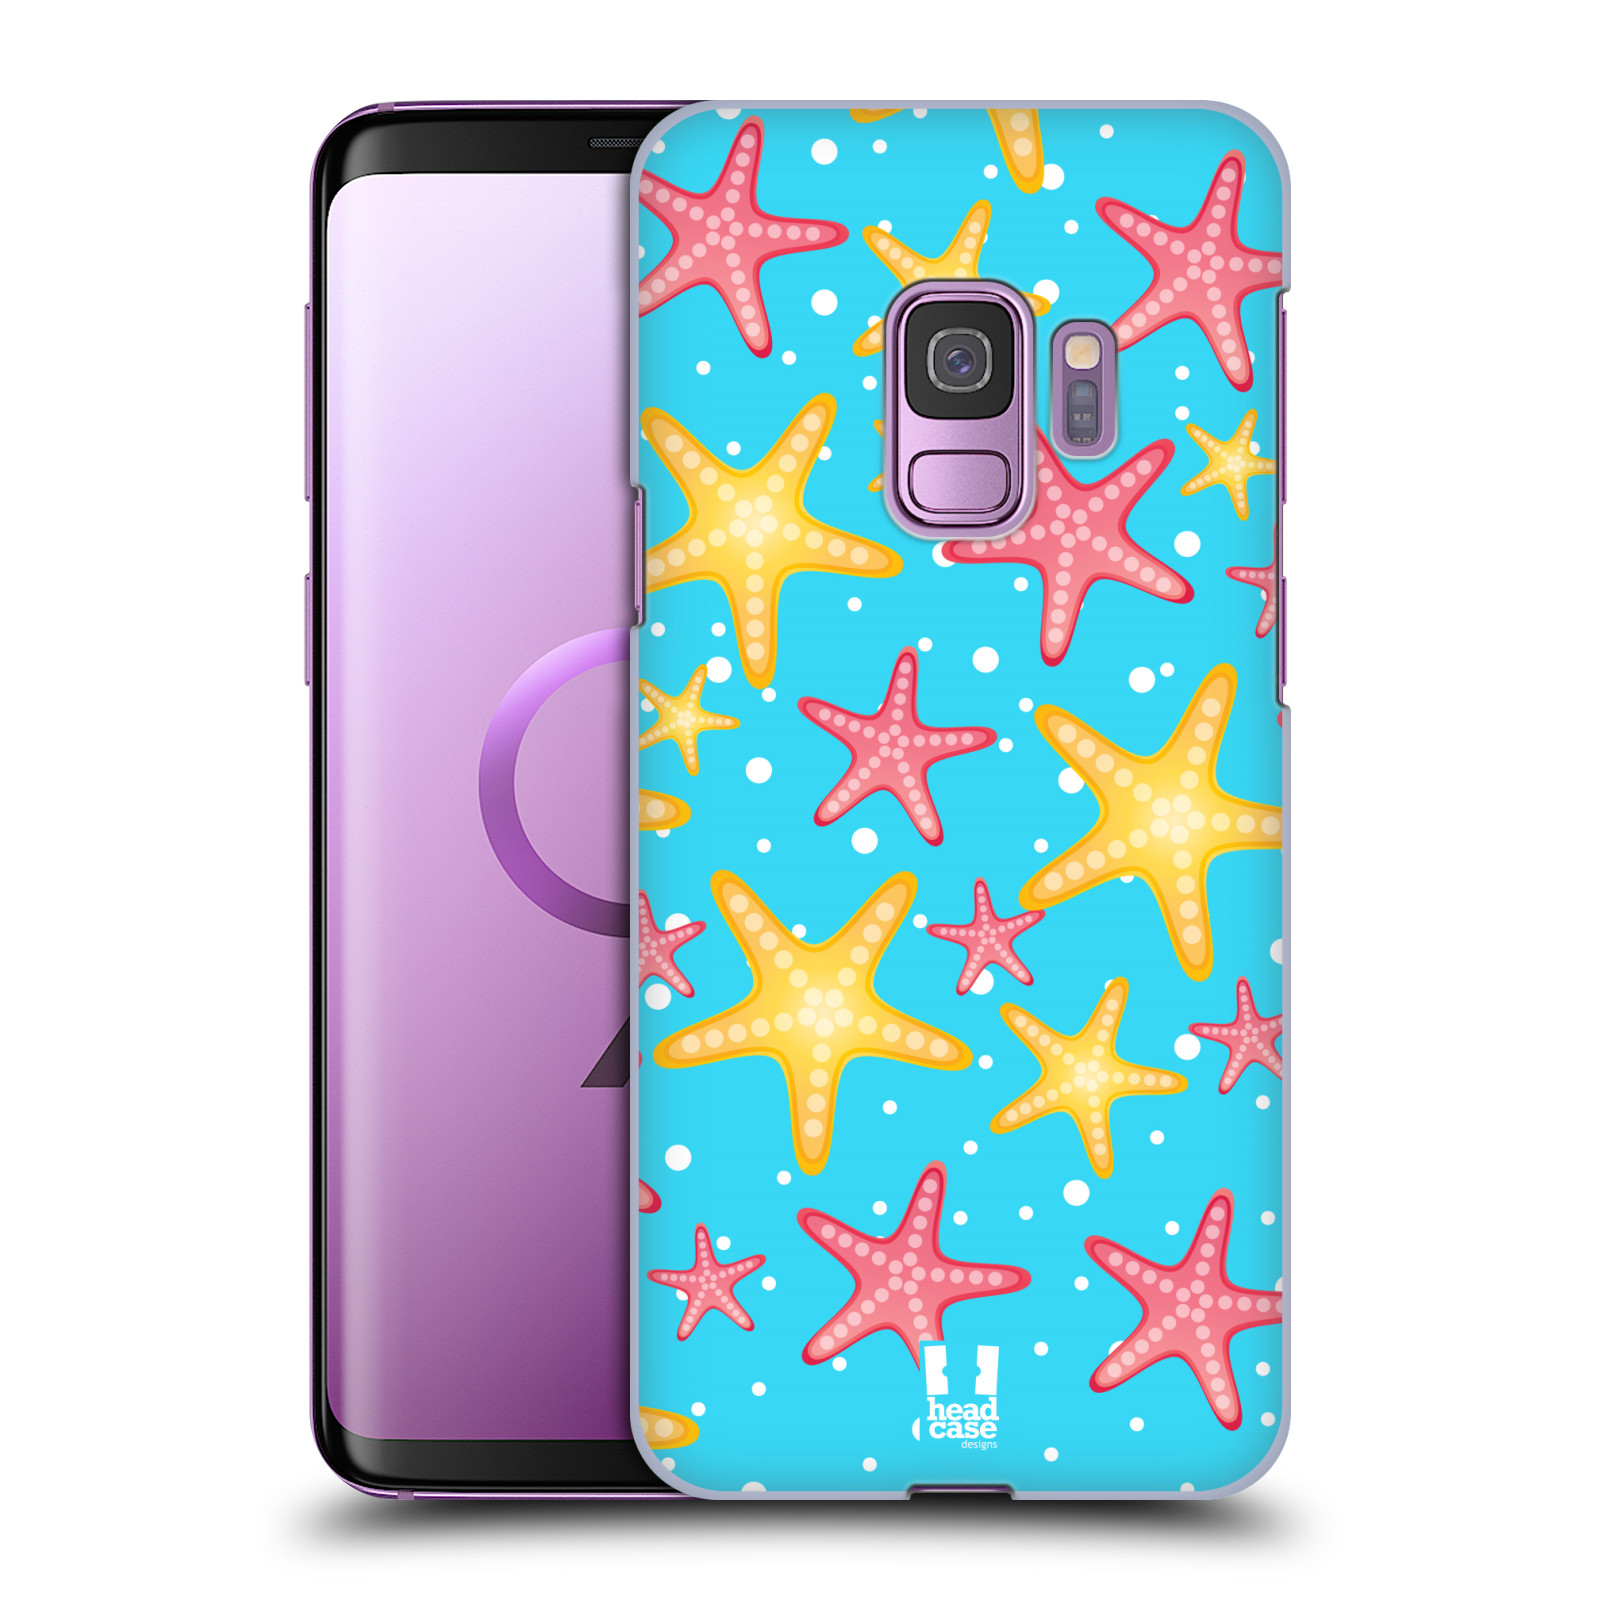 Zadní obal pro mobil Samsung Galaxy S9 - HEAD CASE - kreslený mořský vzor hvězda